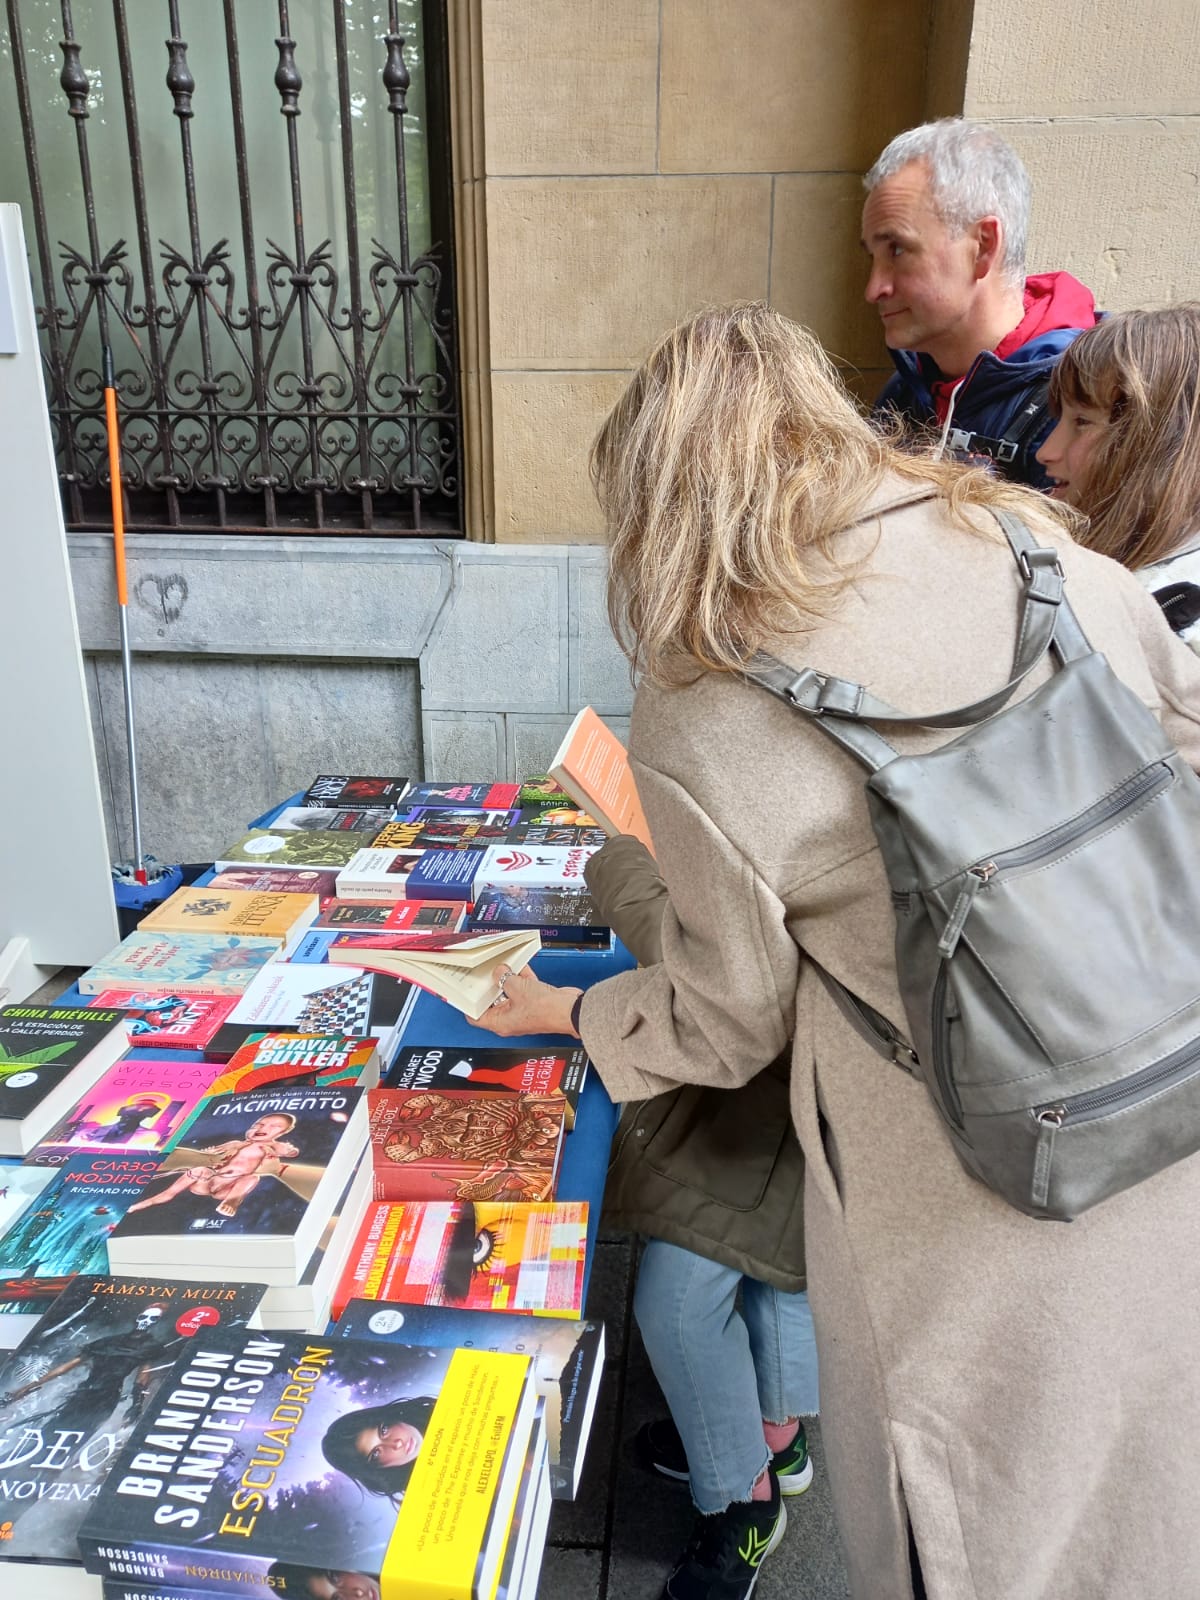 Feria del libro9 - Buena afluencia a la Feria del libro 2022 de Donostia en sus primeras horas